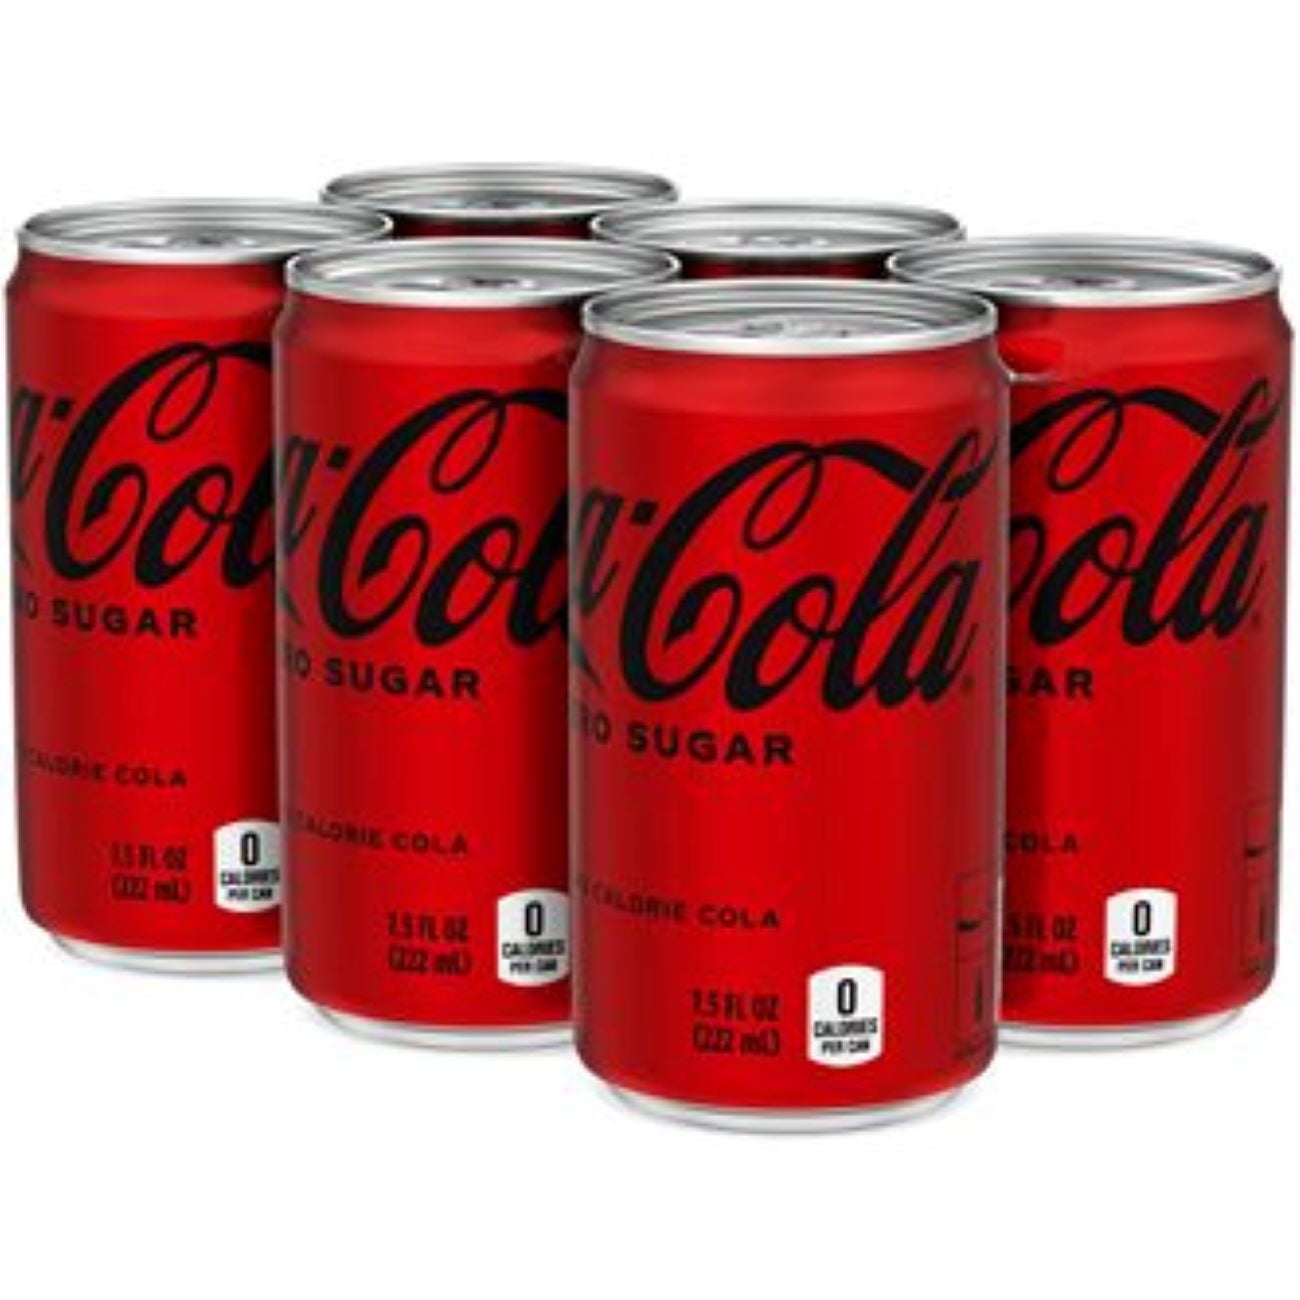 Coca-Cola Zero Sugar Soda 7.5oz Mini Cans, Quantity of 12 